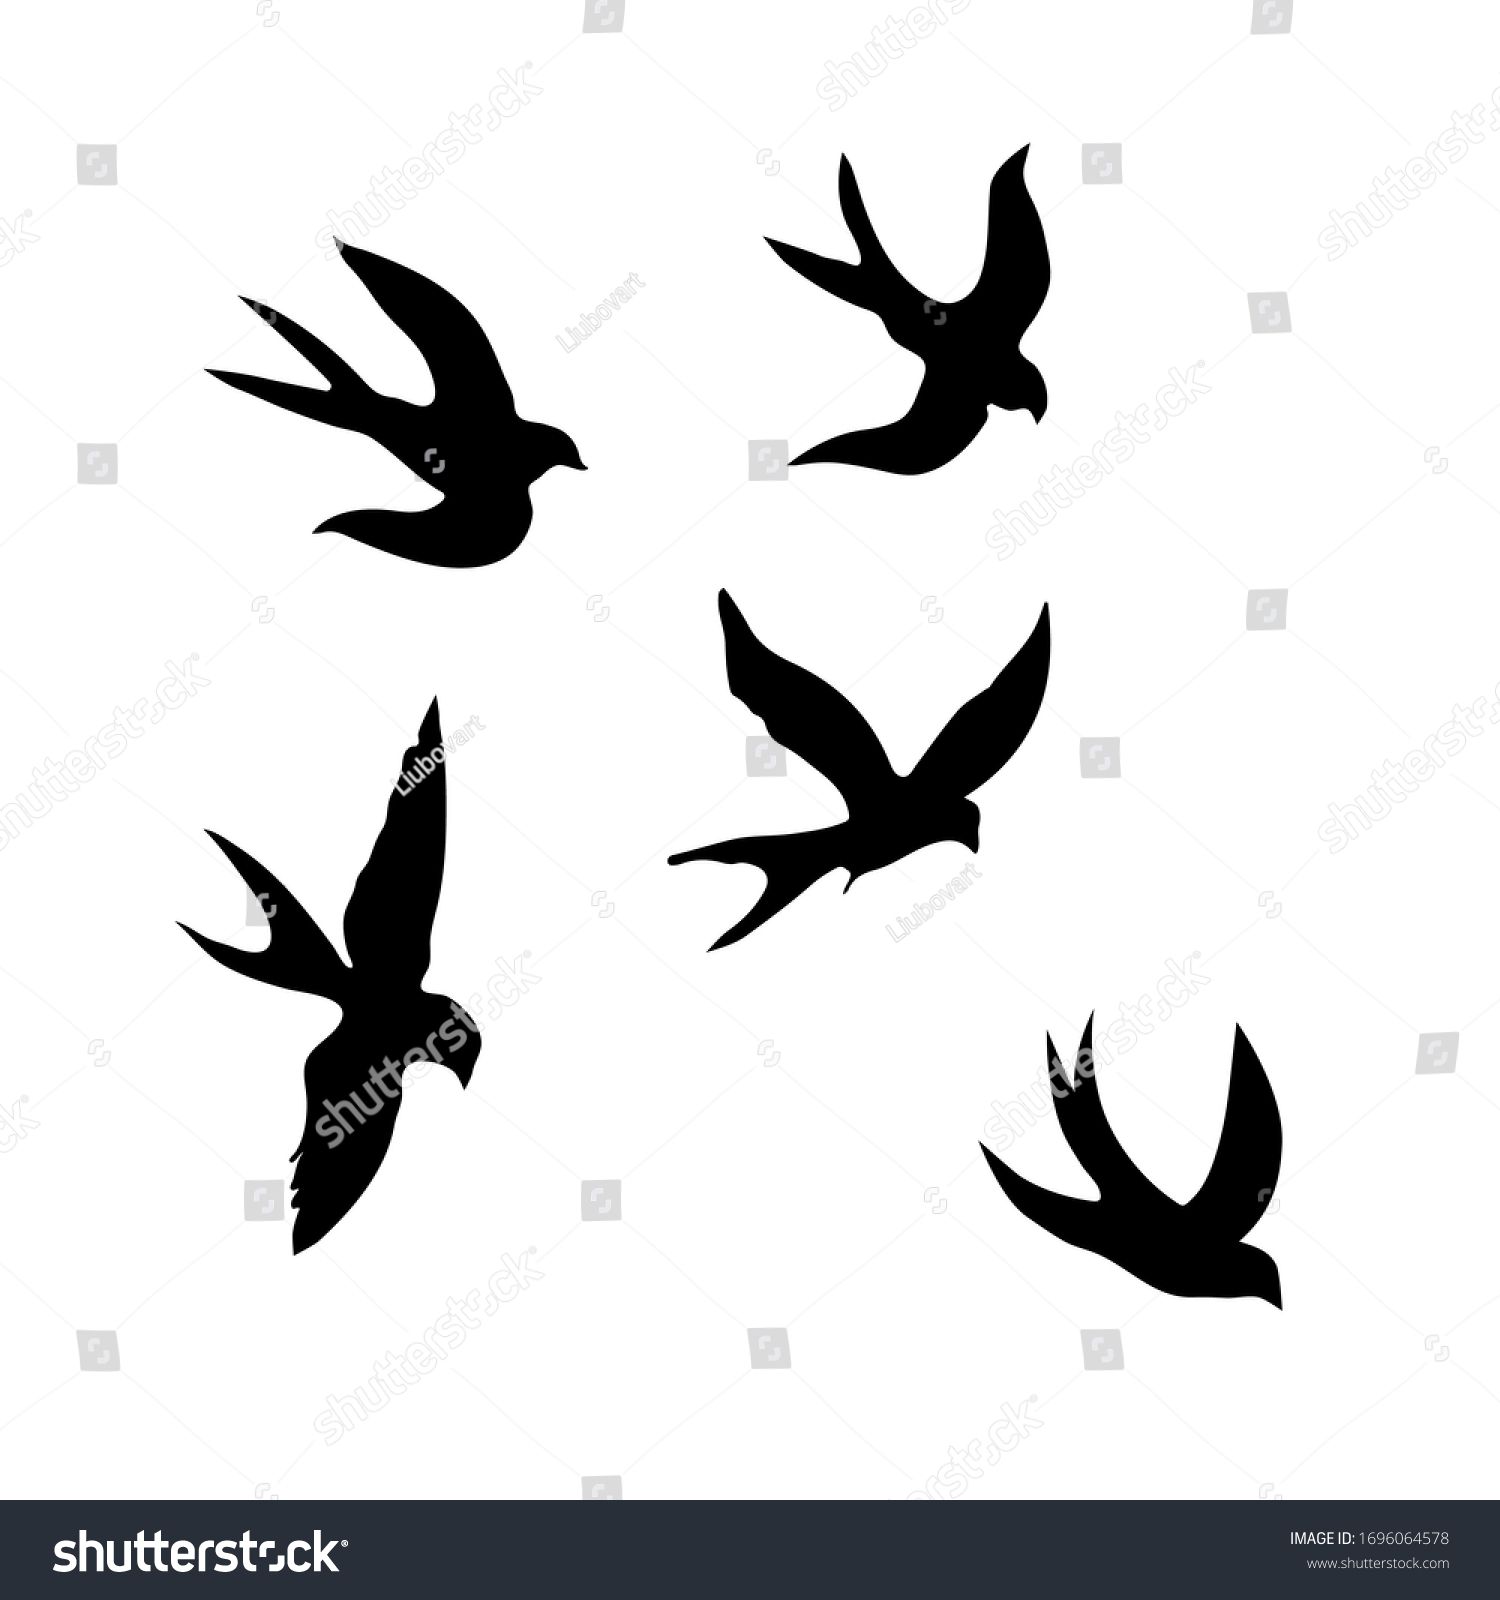 ツバメ 白い背景に黒いシルエット ツバメの群れのシルエット 飛ぶ鳥の黒い輪郭 ツバメを飛ばす 白い背景にタトゥーベクターイラスト のベクター画像素材 ロイヤリティフリー